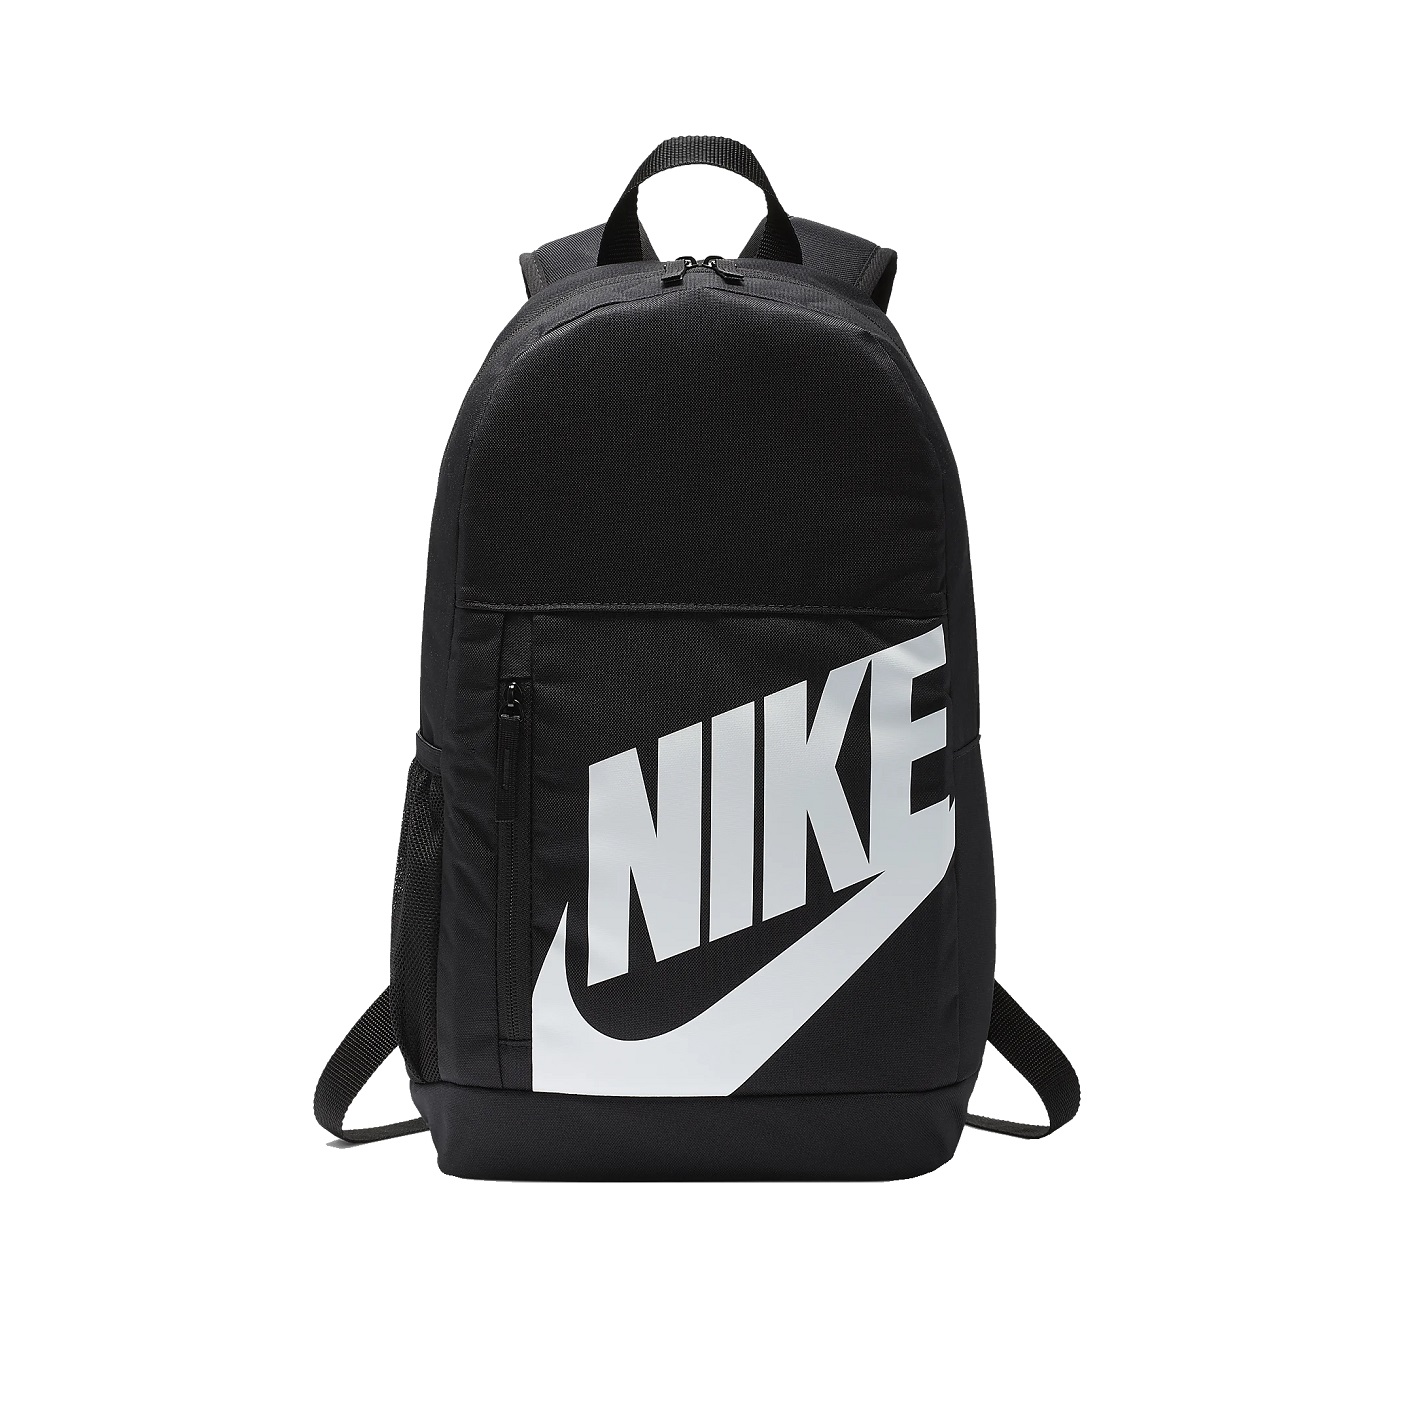 ☆ Nike Elemental Kids Rucksack schwarz/weiß - hier bestellen!